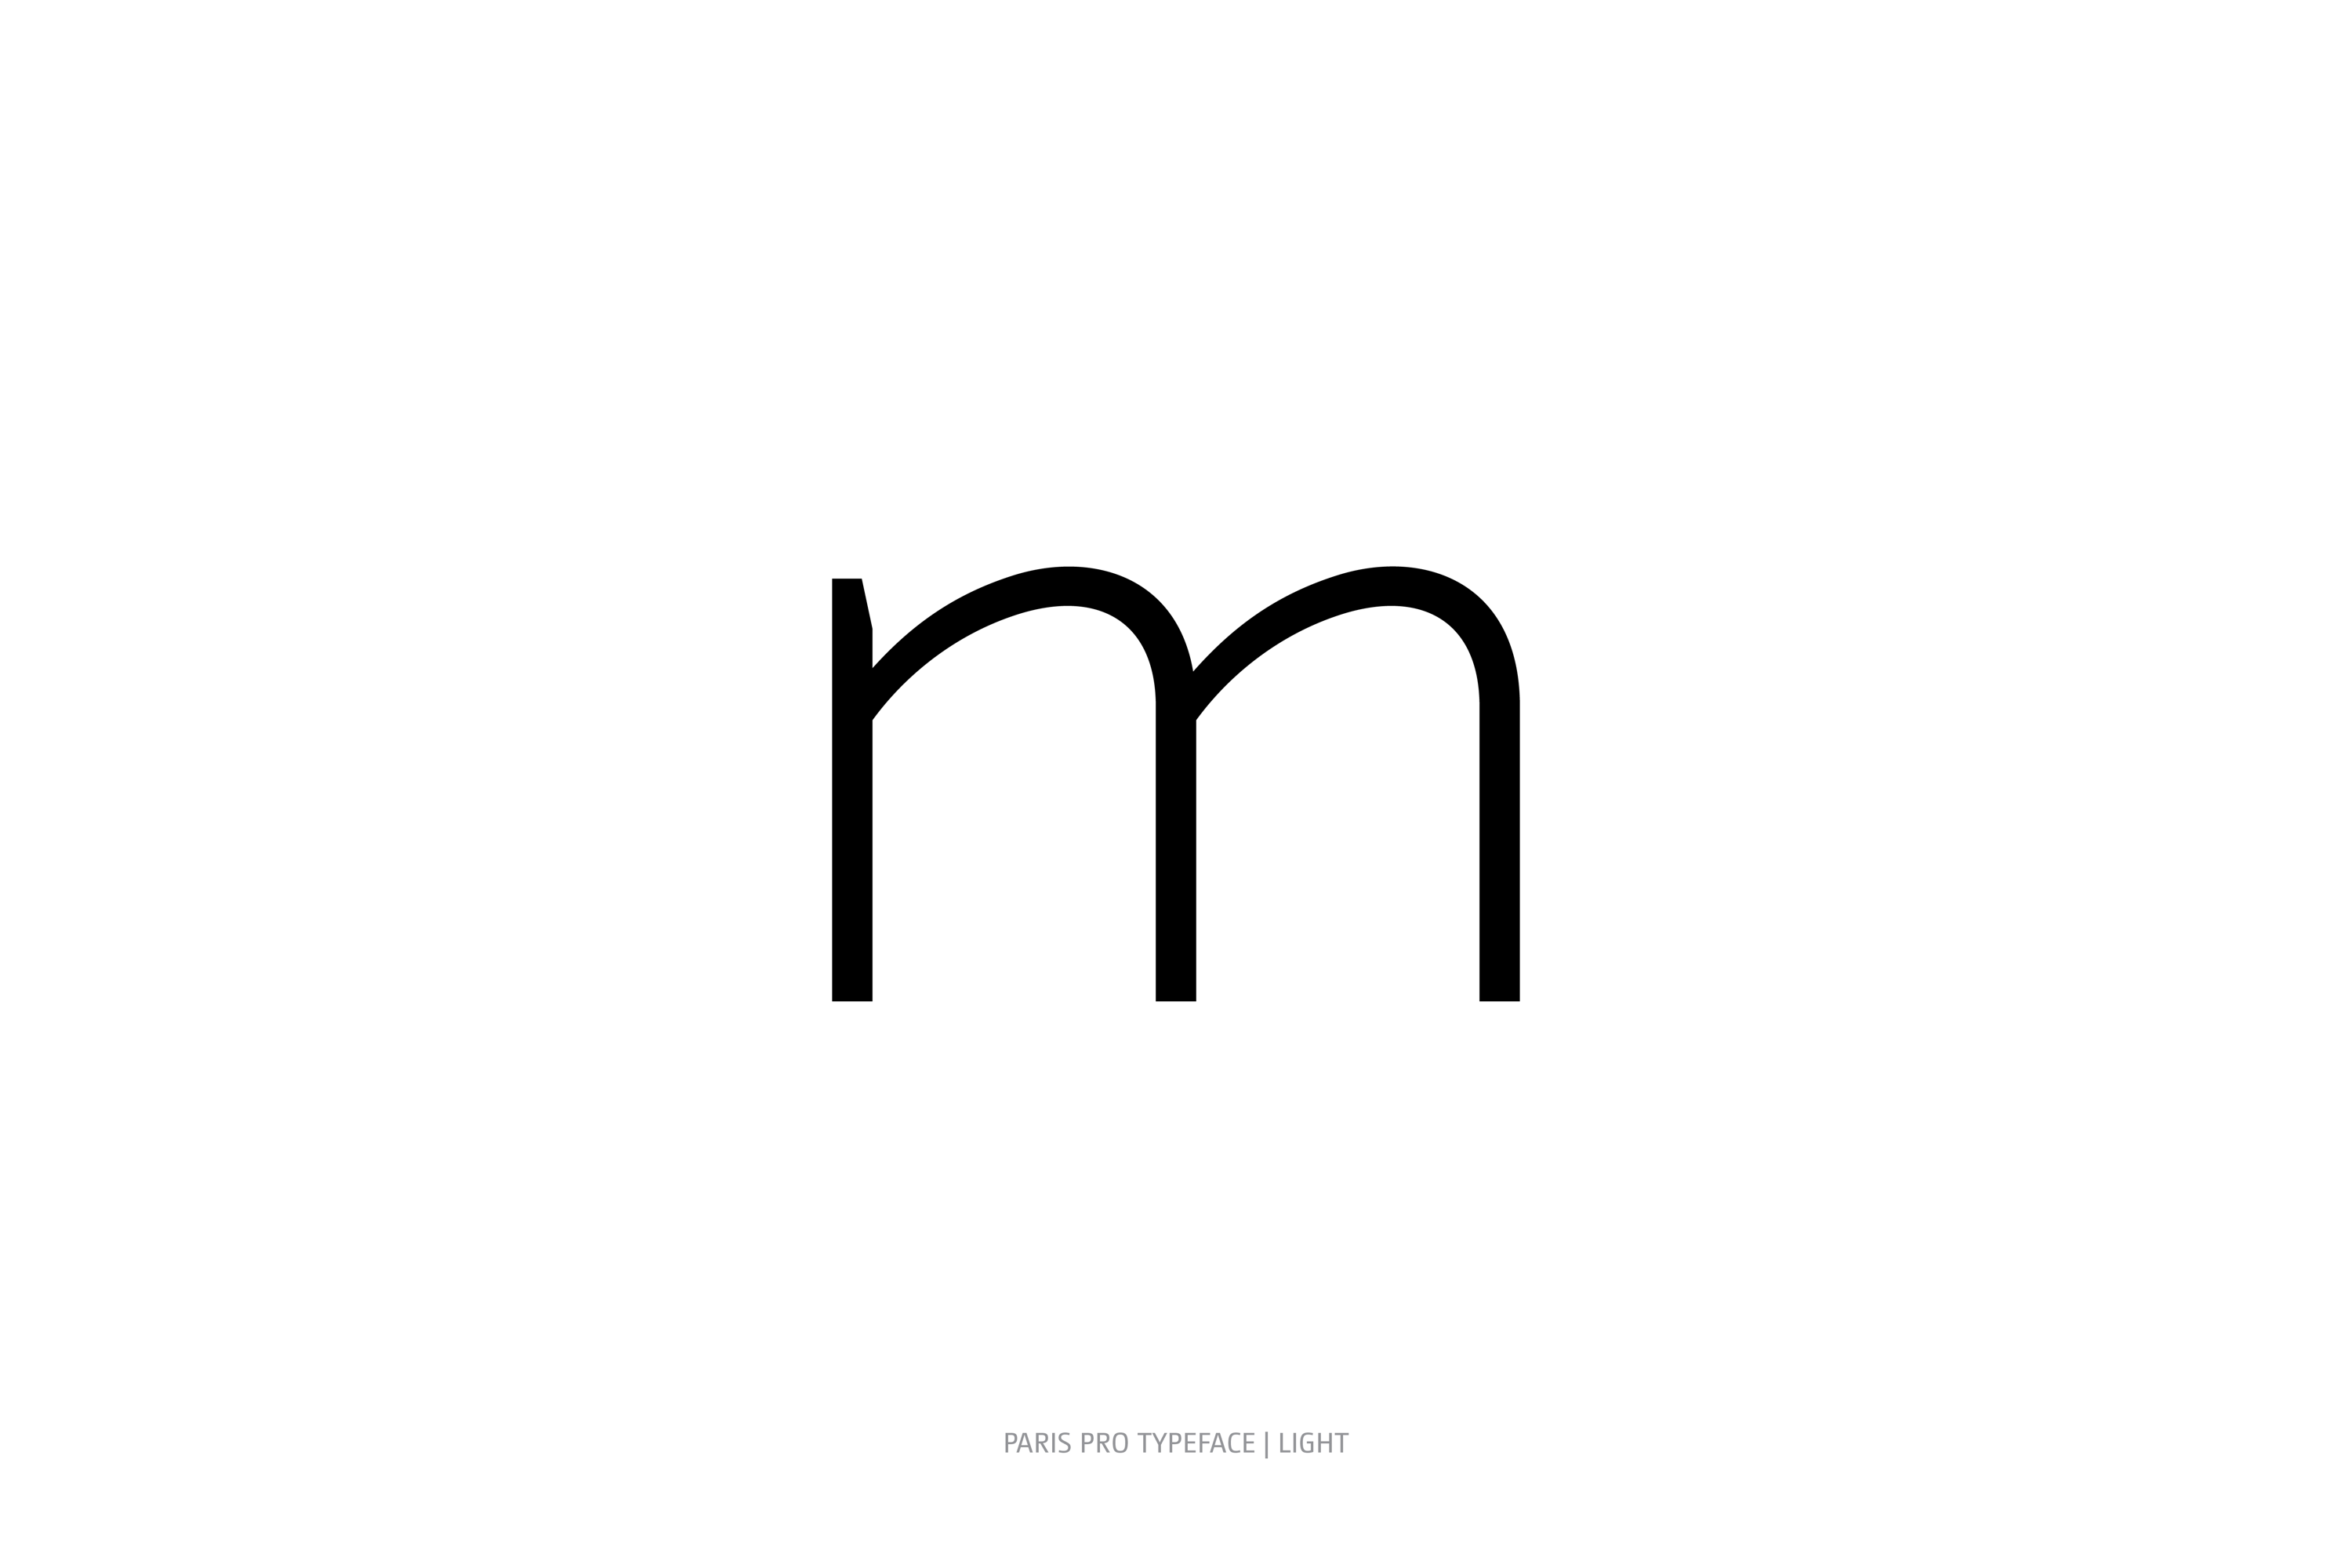 Paris Pro Typeface Light Style m